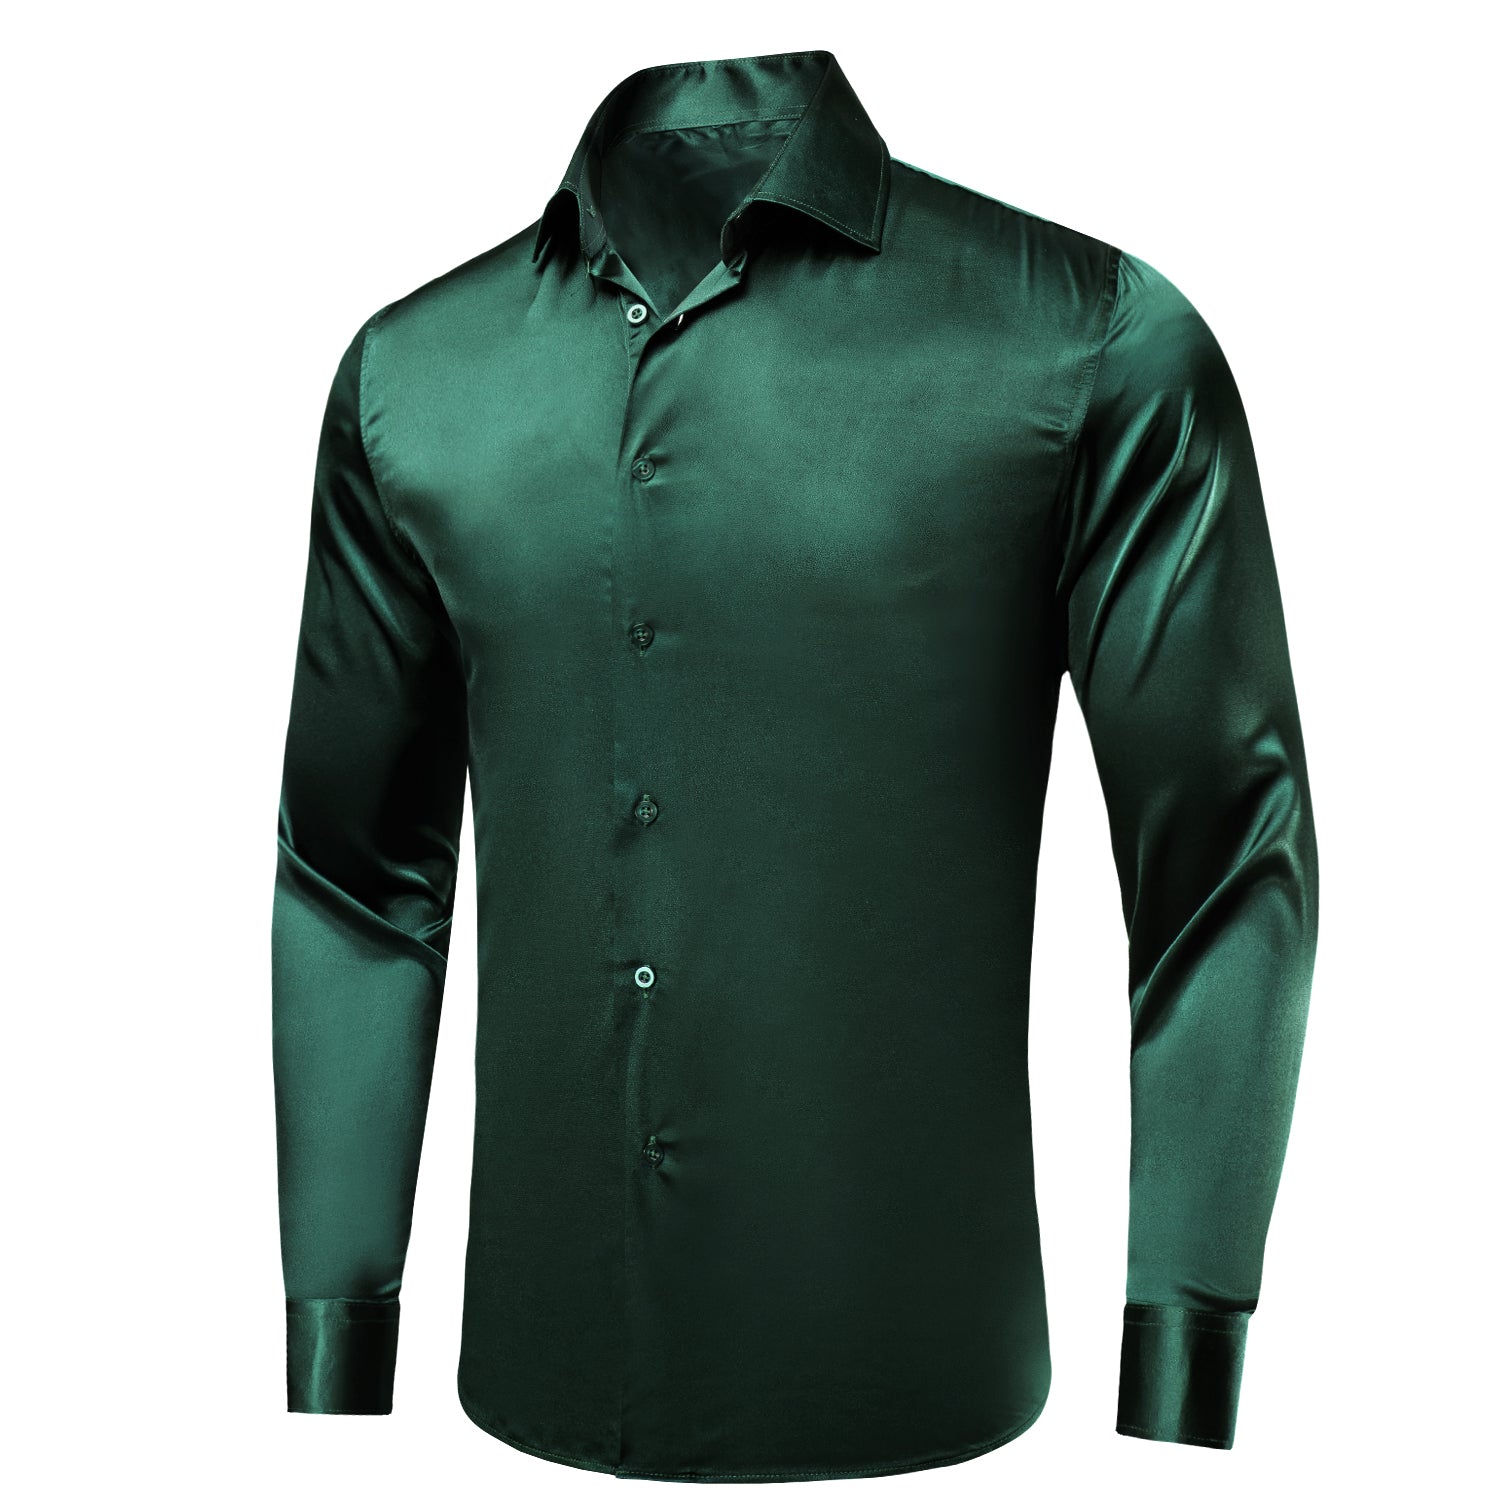 Emerald Green Solid Satin Men's Long Sleeve Dress Shirt